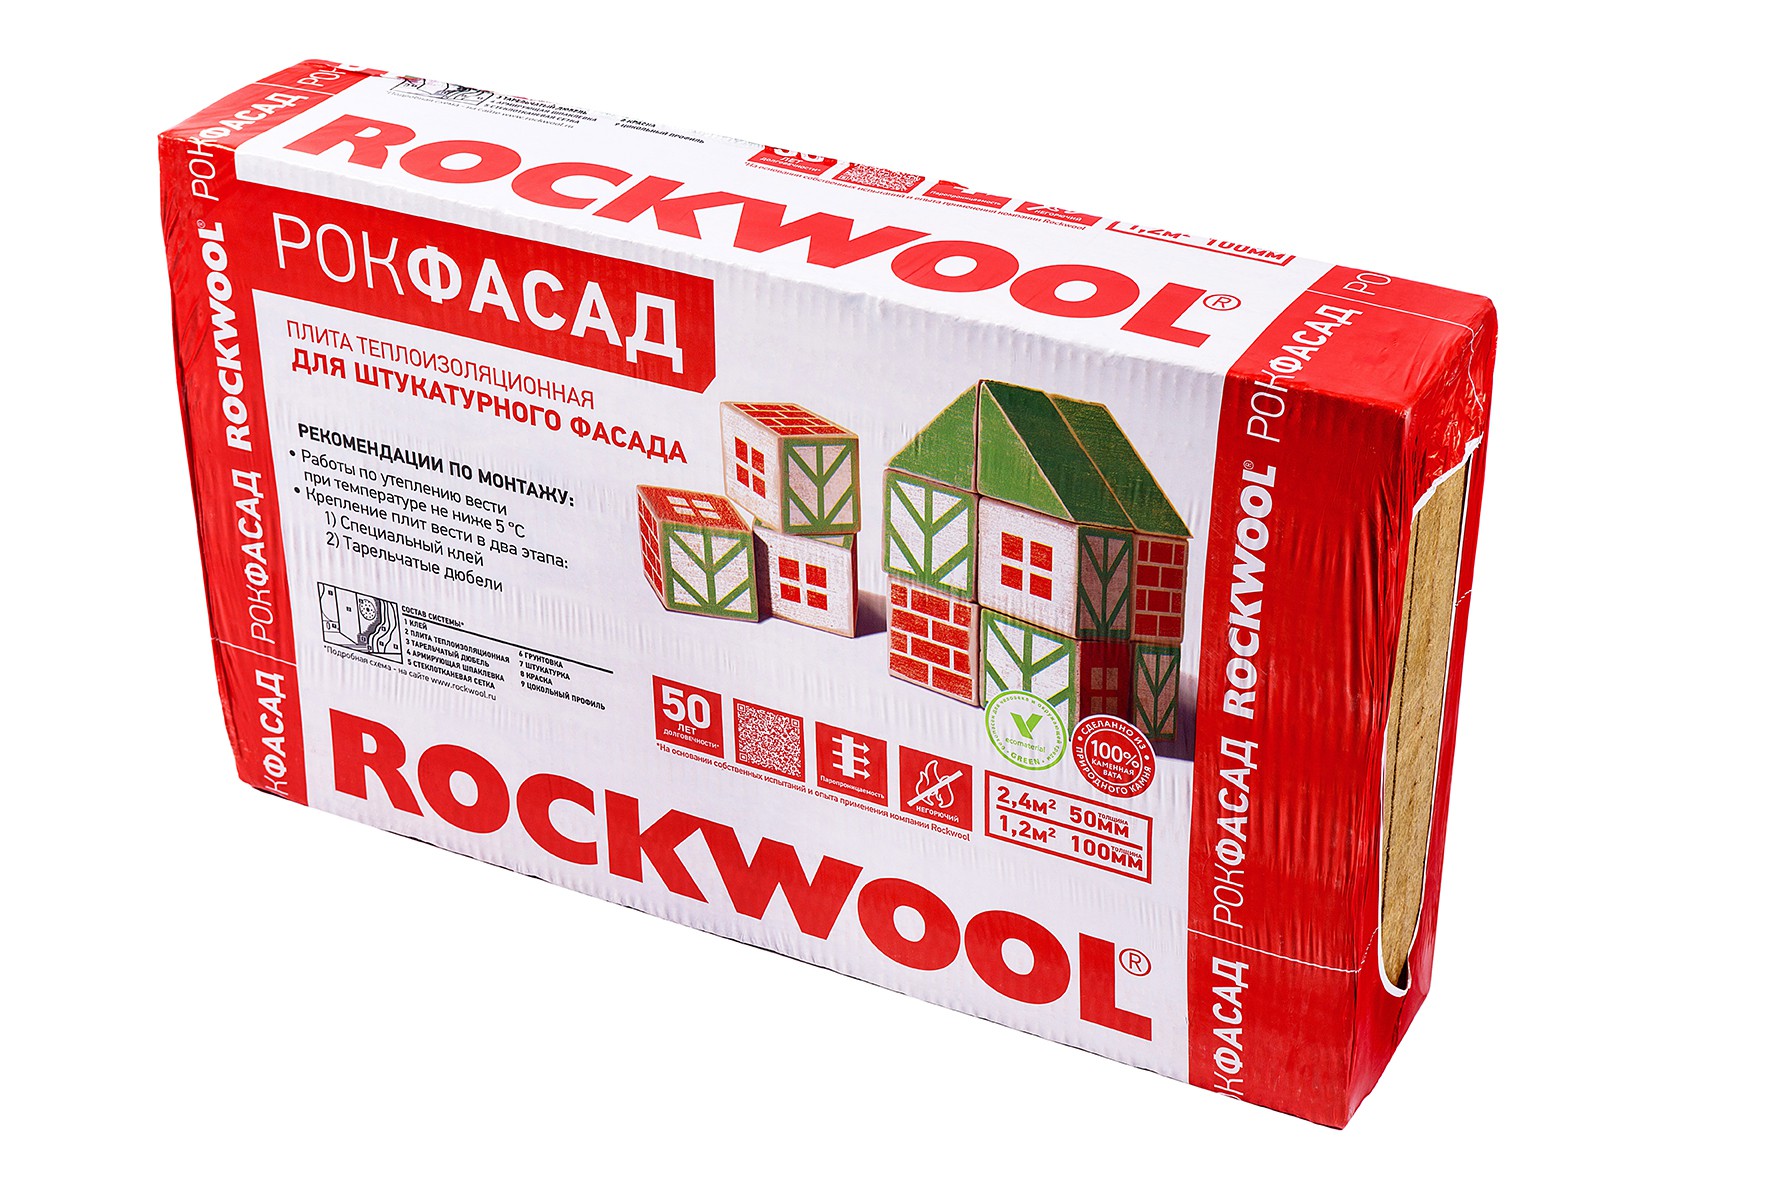 Купить Rockwool Рокфасад 1000x600 100 мм